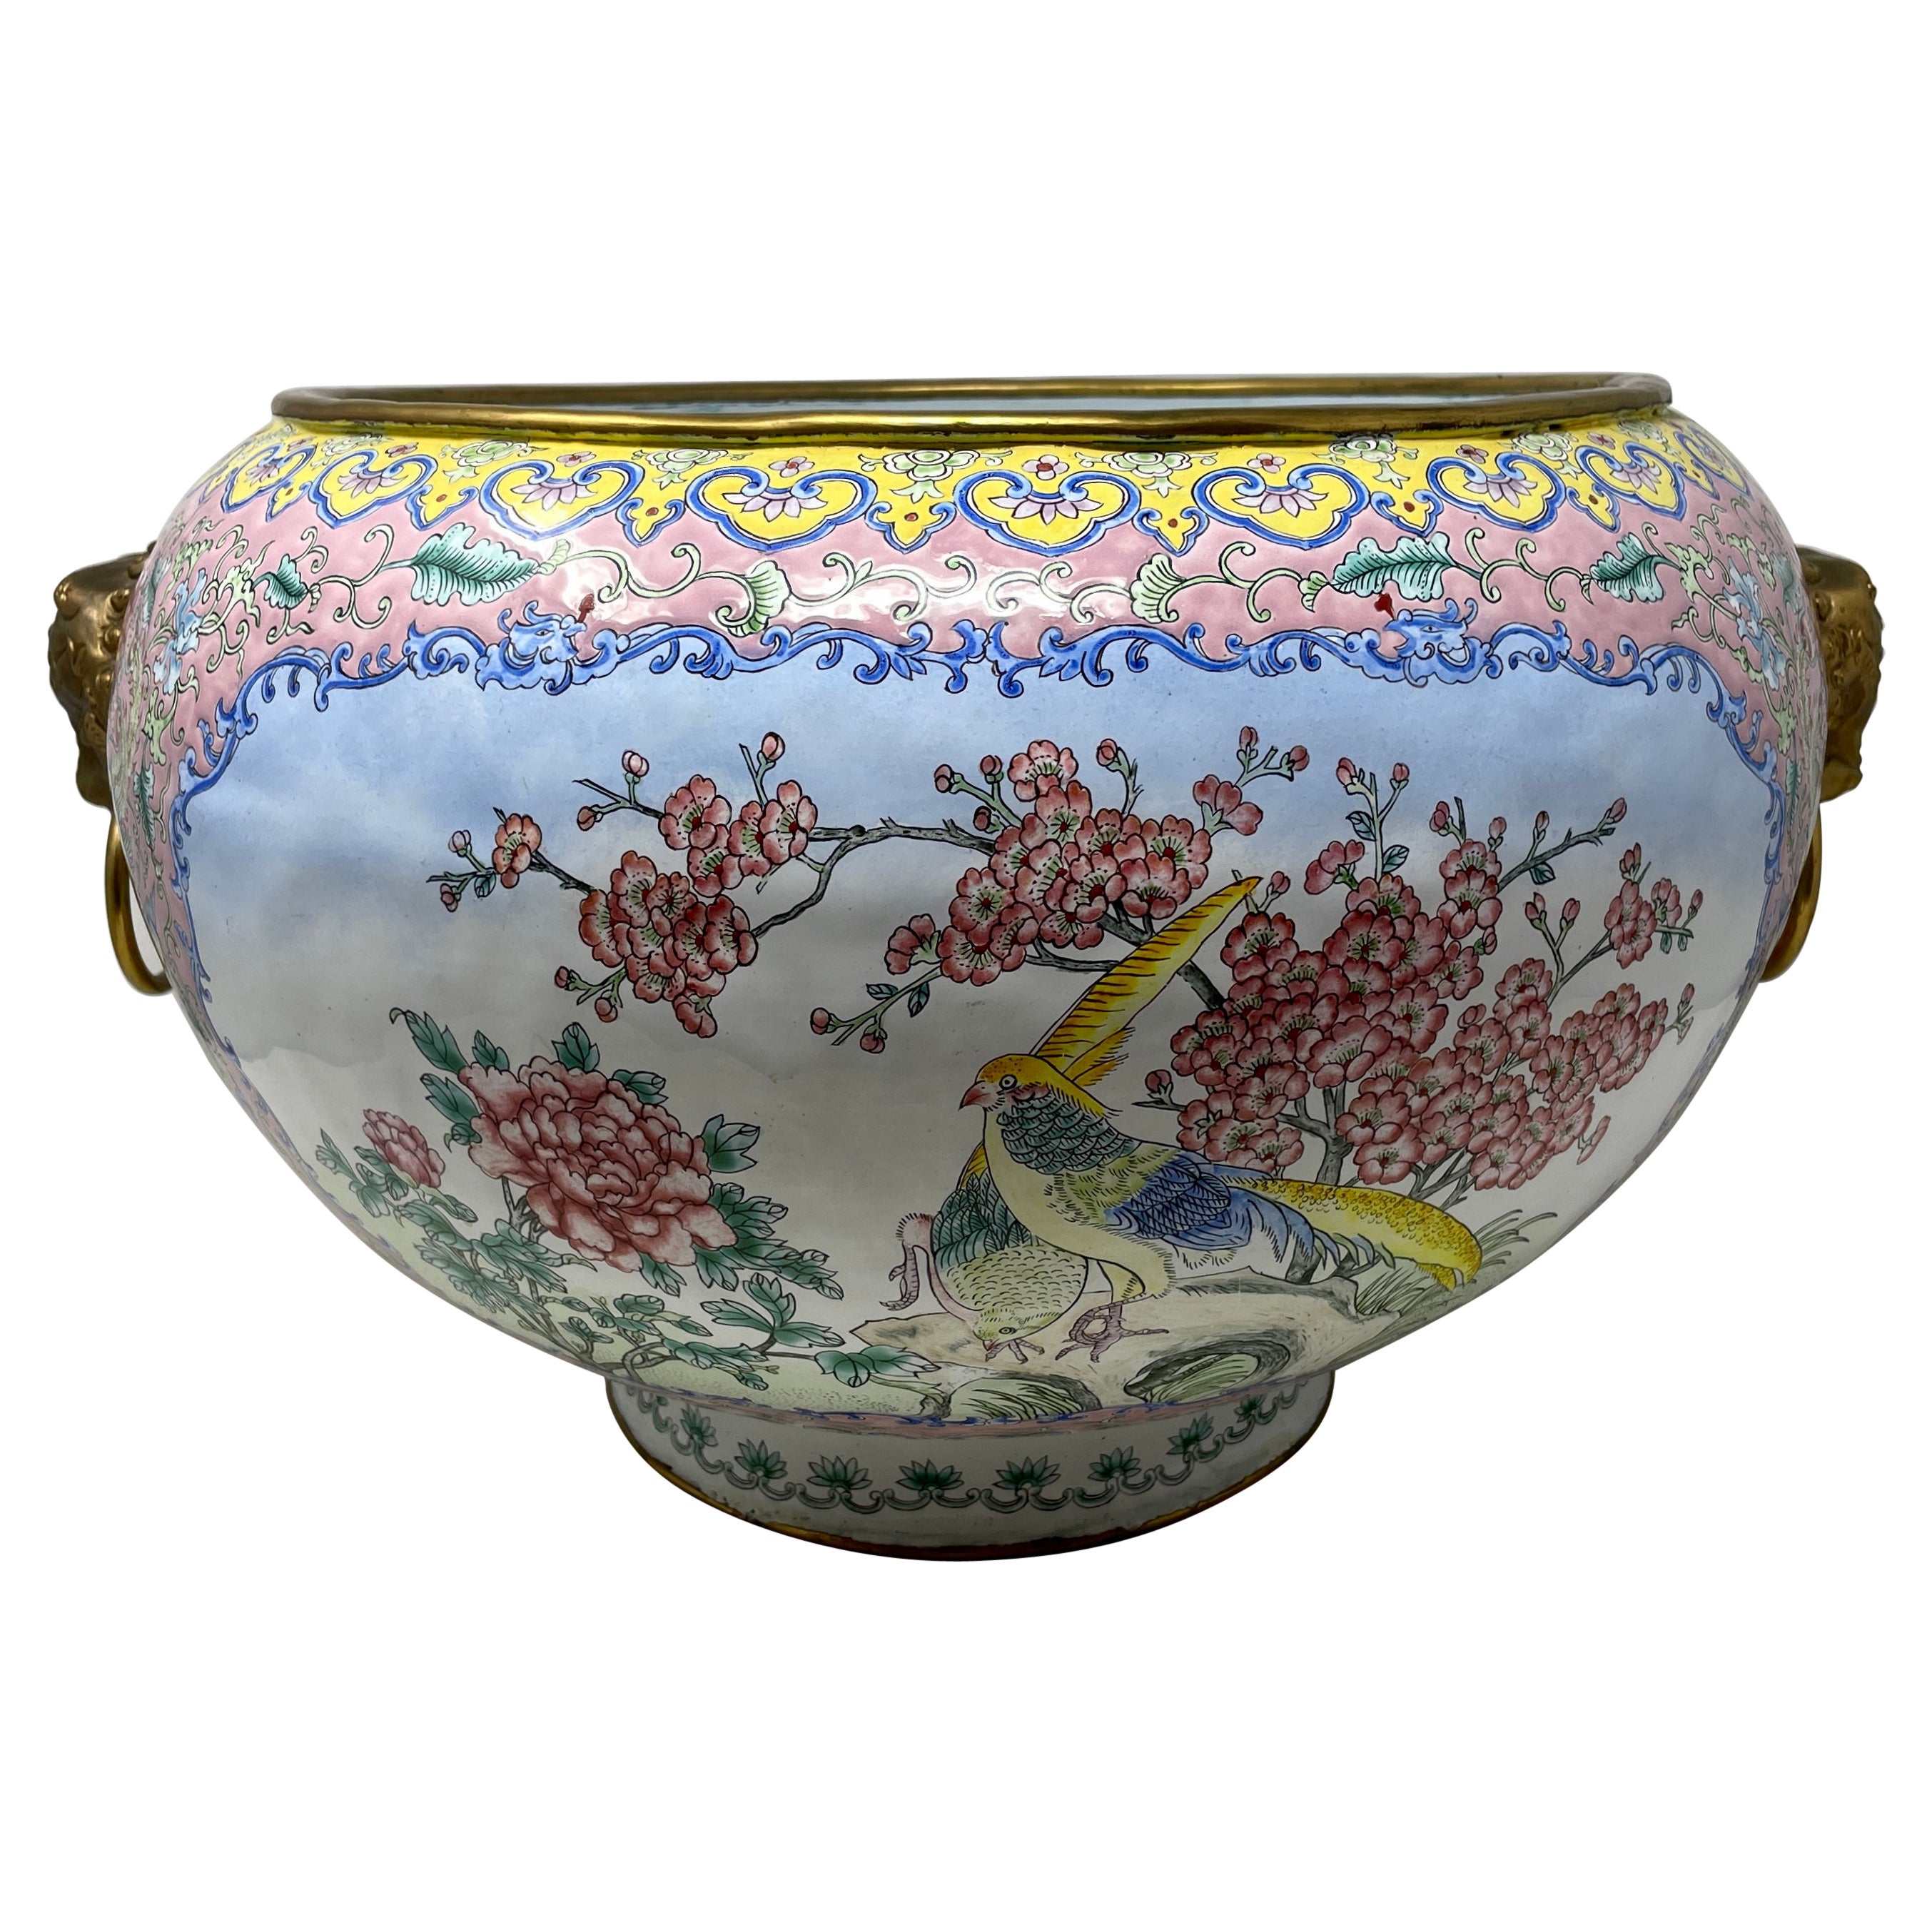 Antique French Cloisonné Enamel Porcelain Jardiniere, Circa 1880-1890.